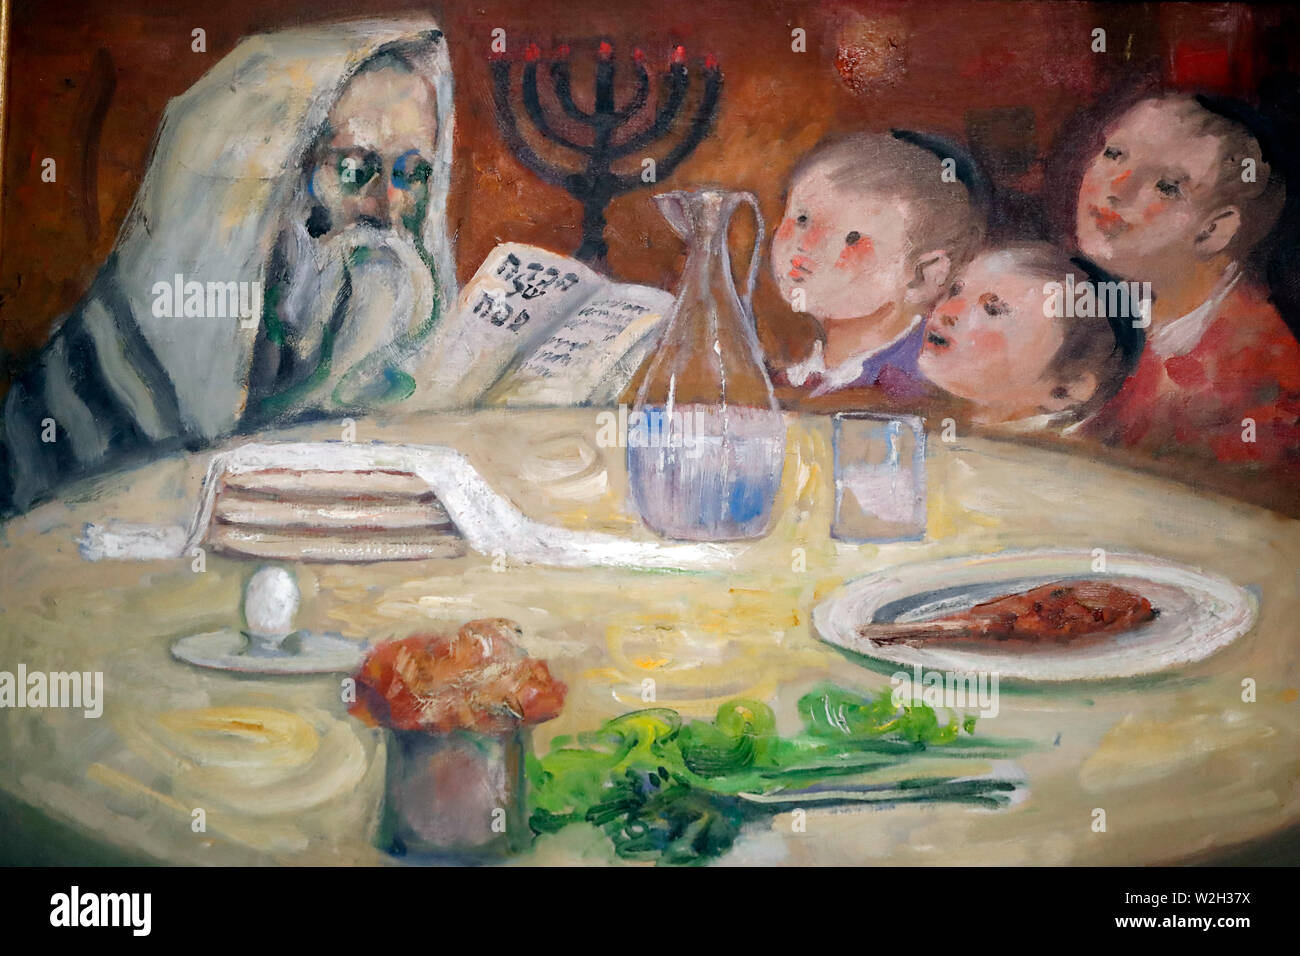 Das Jüdische Museum von Venedig. Tabelle für das Passahfest Seder. Malerei. Italien. Stockfoto